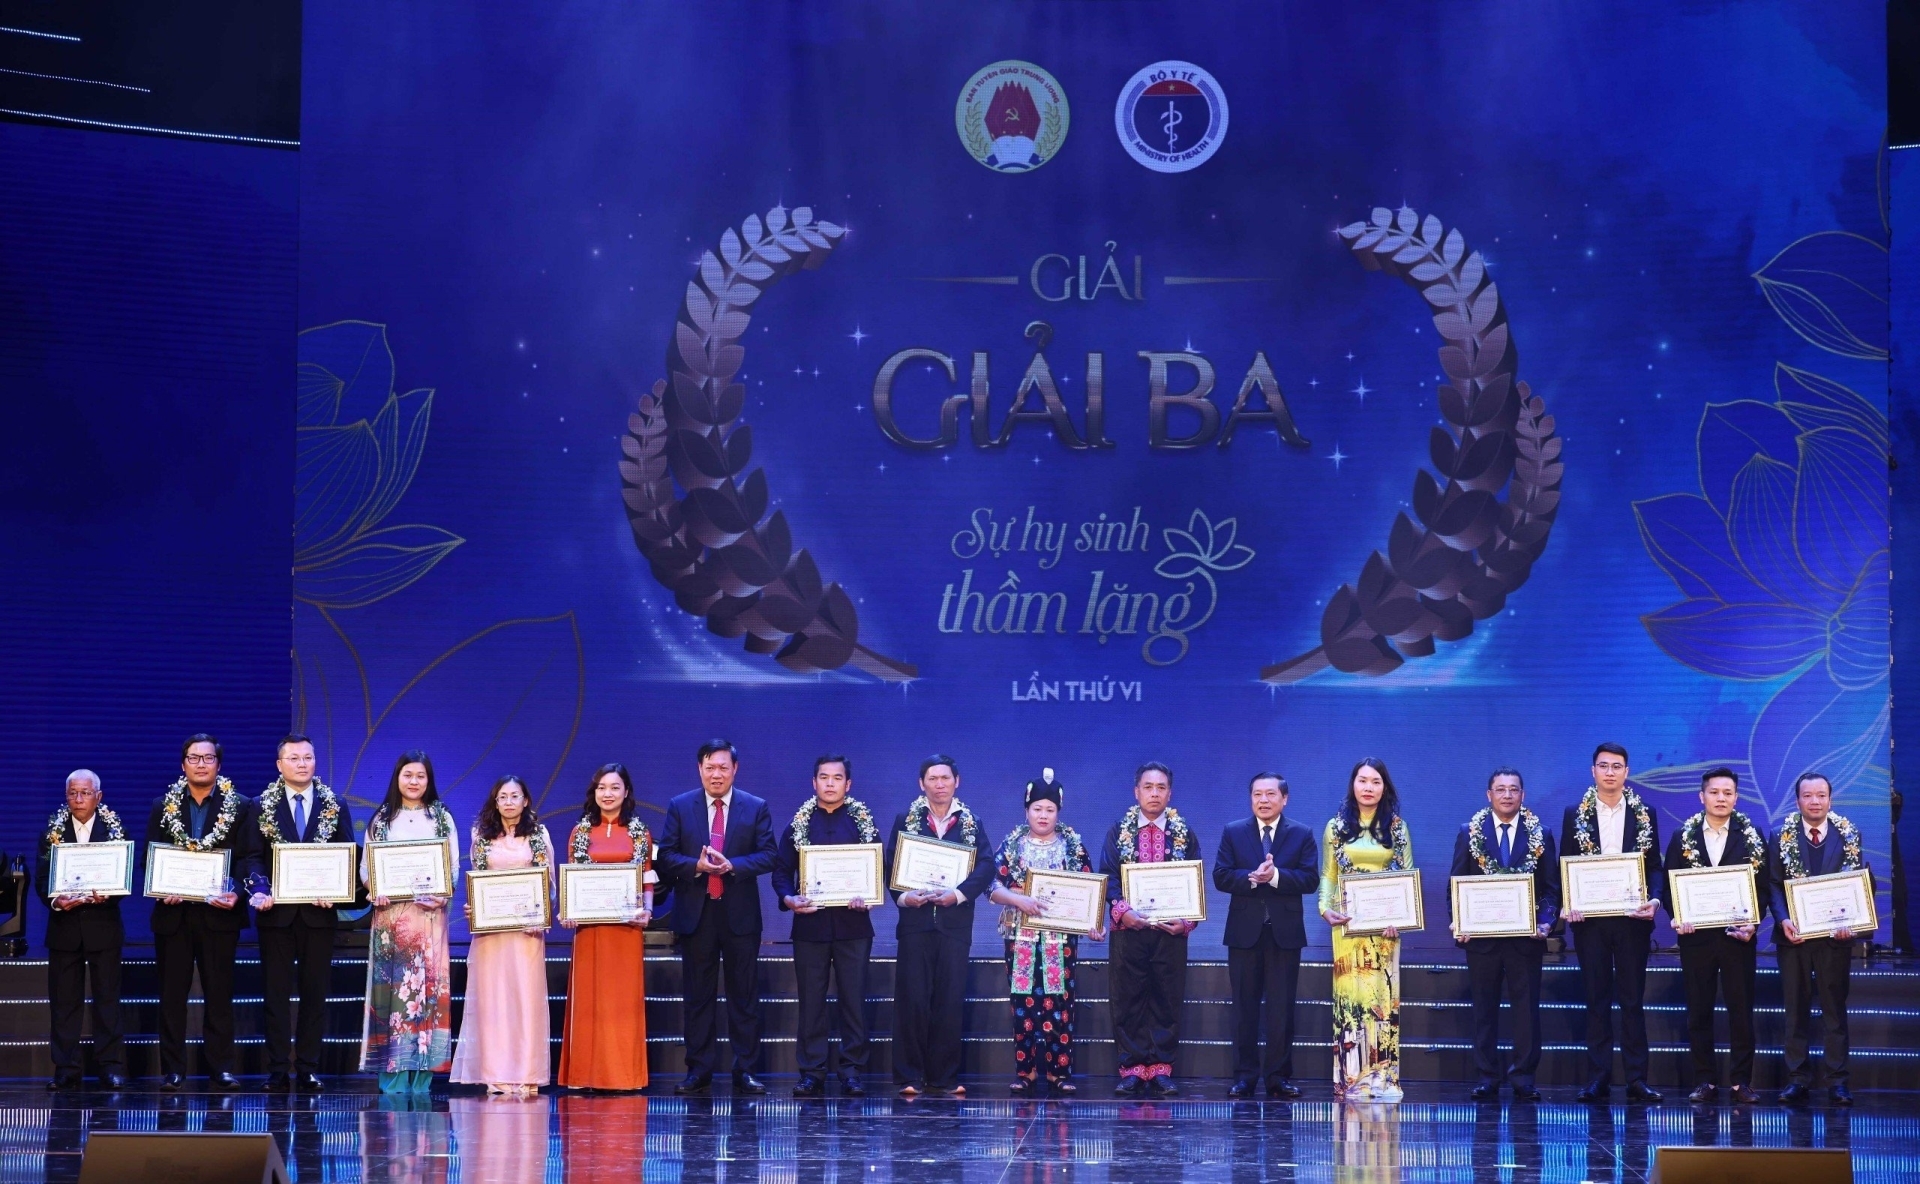 Phó Trưởng ban Thường trực Ban Tuyên giáo Trung ương Lại Xuân Môn và Thứ trưởng Bộ Y tế Đỗ Xuân Tuyên trao Giải Ba cho các tác giả và nhân vật trong tác phẩm.